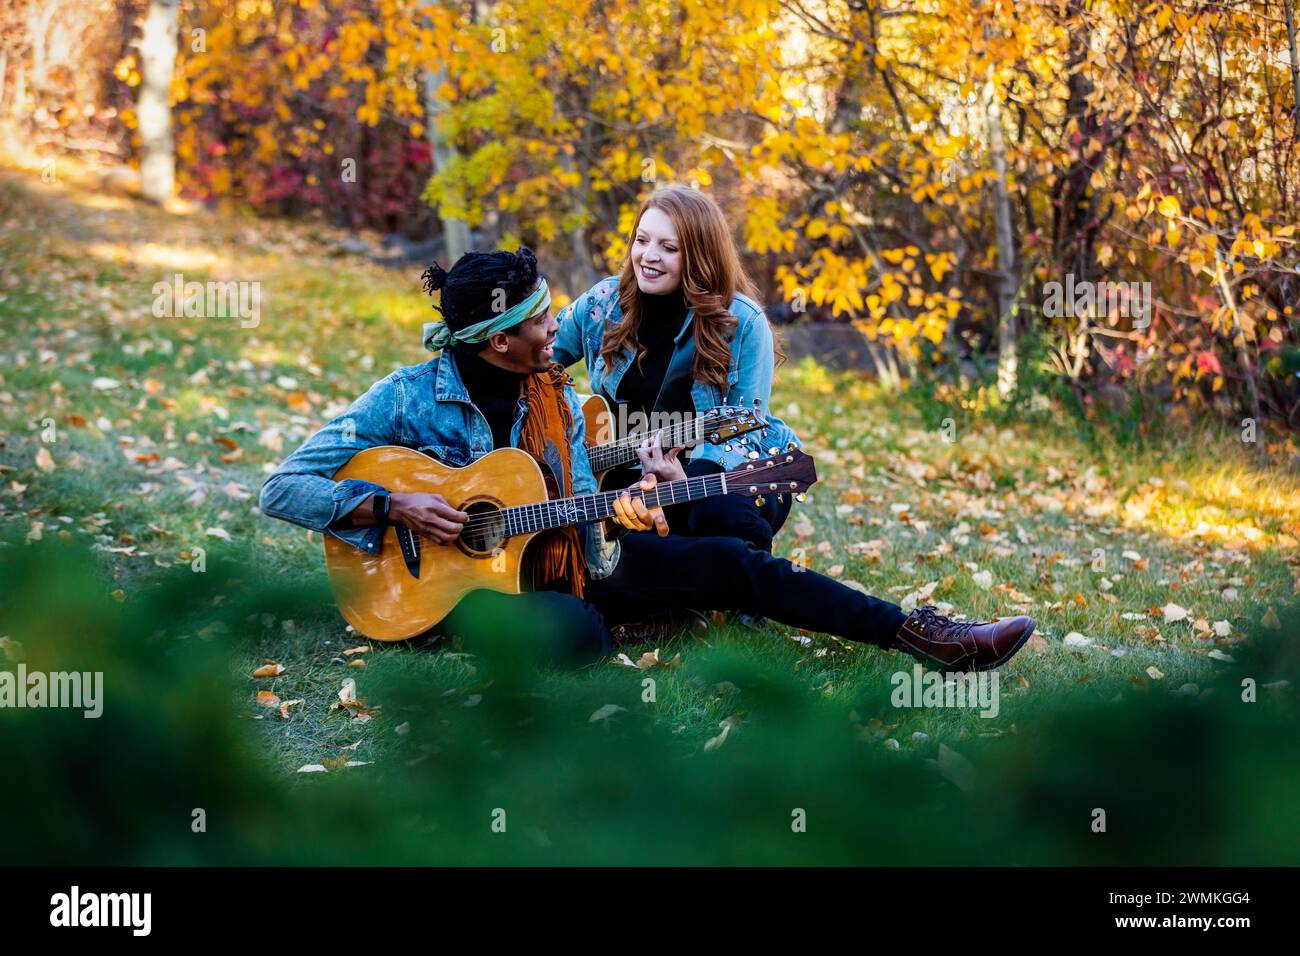 Guarda attraverso le foglie di una coppia sposata di razza mista seduta sull'erba, trascorrendo del tempo insieme, sorridendo e suonando le chitarre durante un fami autunnale... Foto Stock